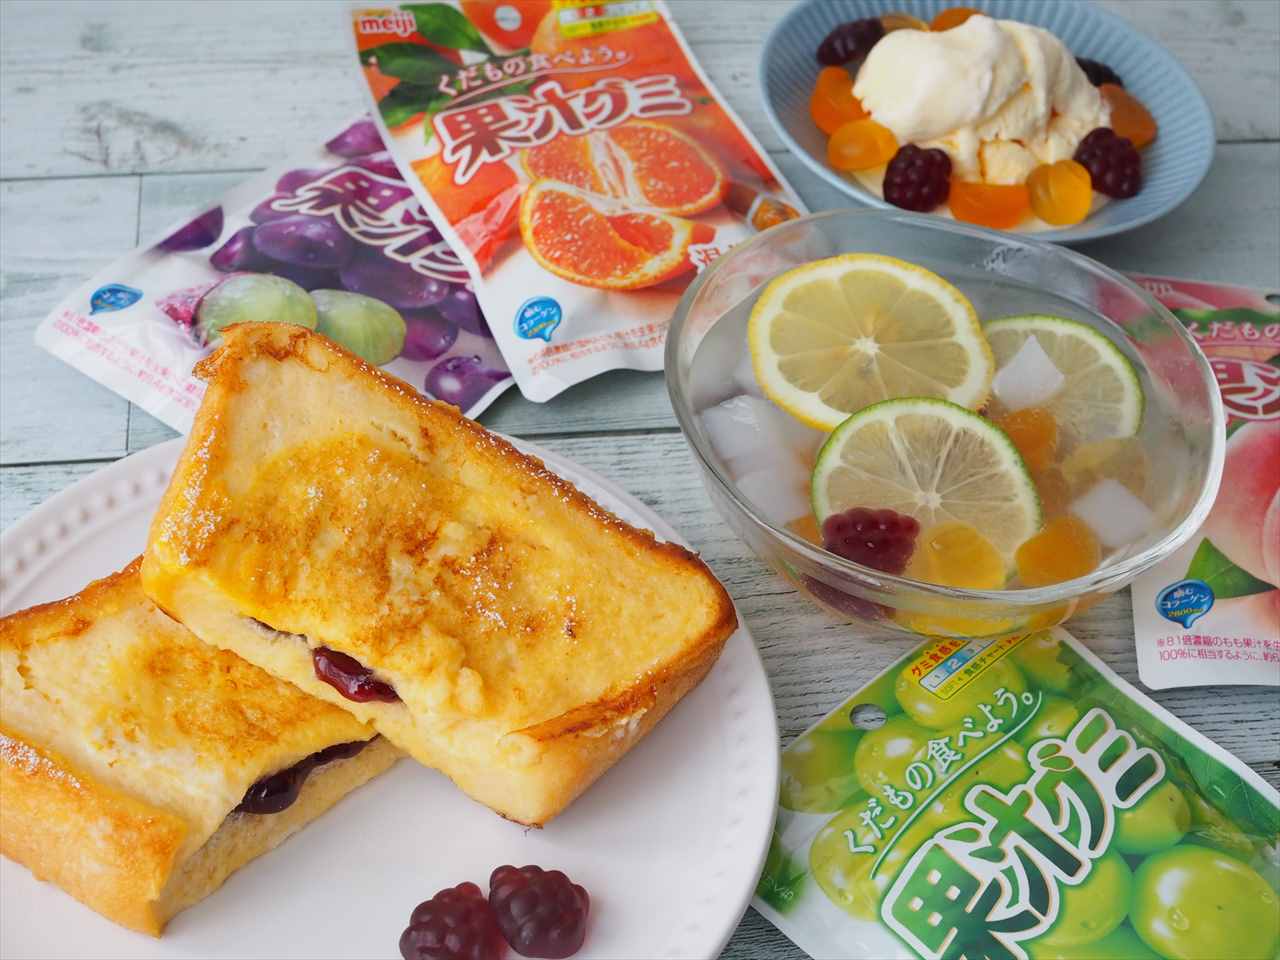 【果汁グミのアレンジレシピ3選】フルーツポンチやフレンチトーストに大変身